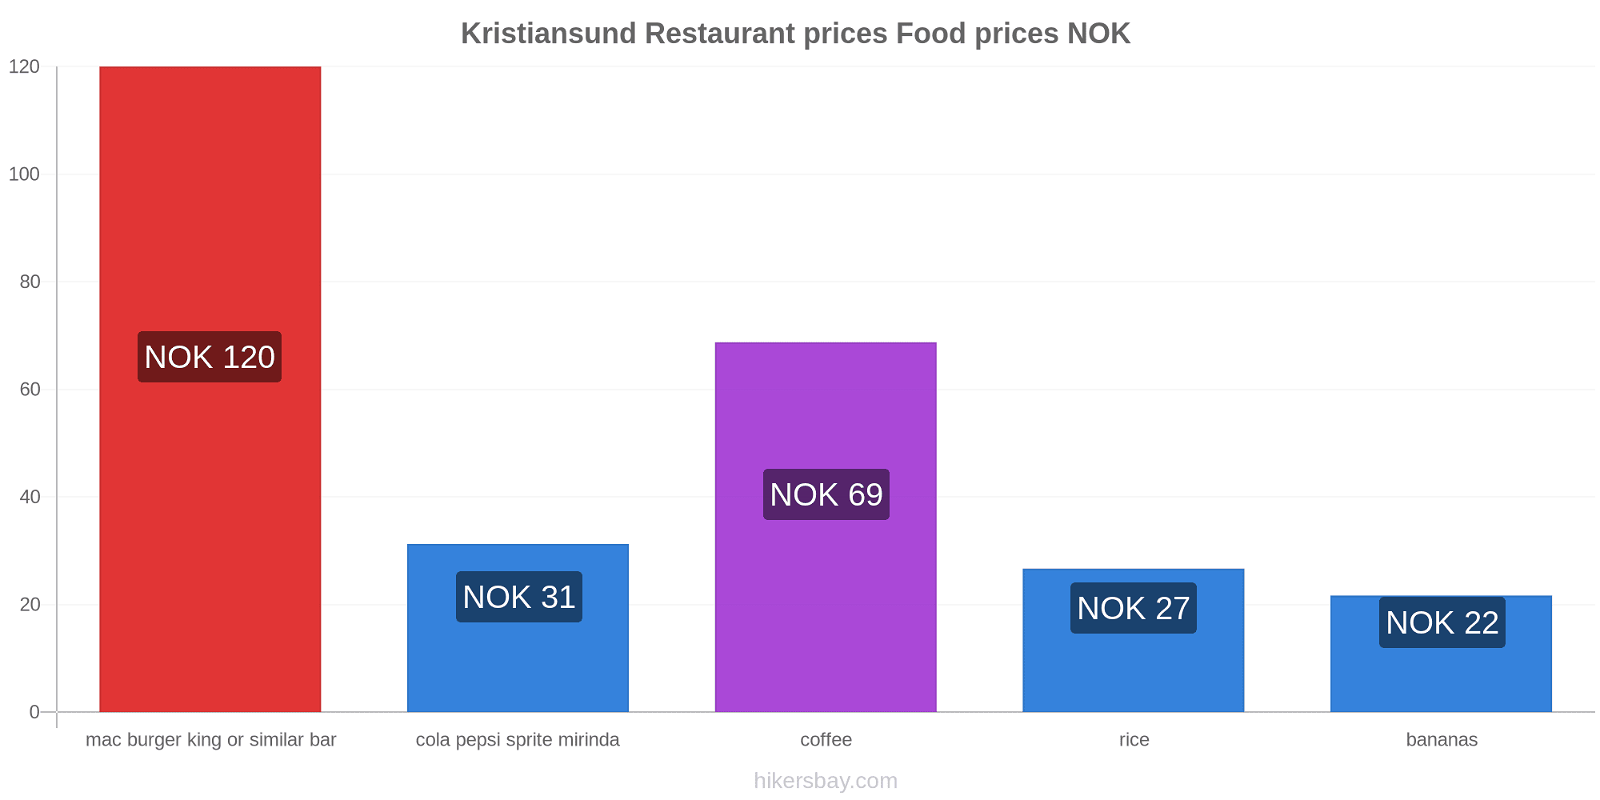 Kristiansund price changes hikersbay.com